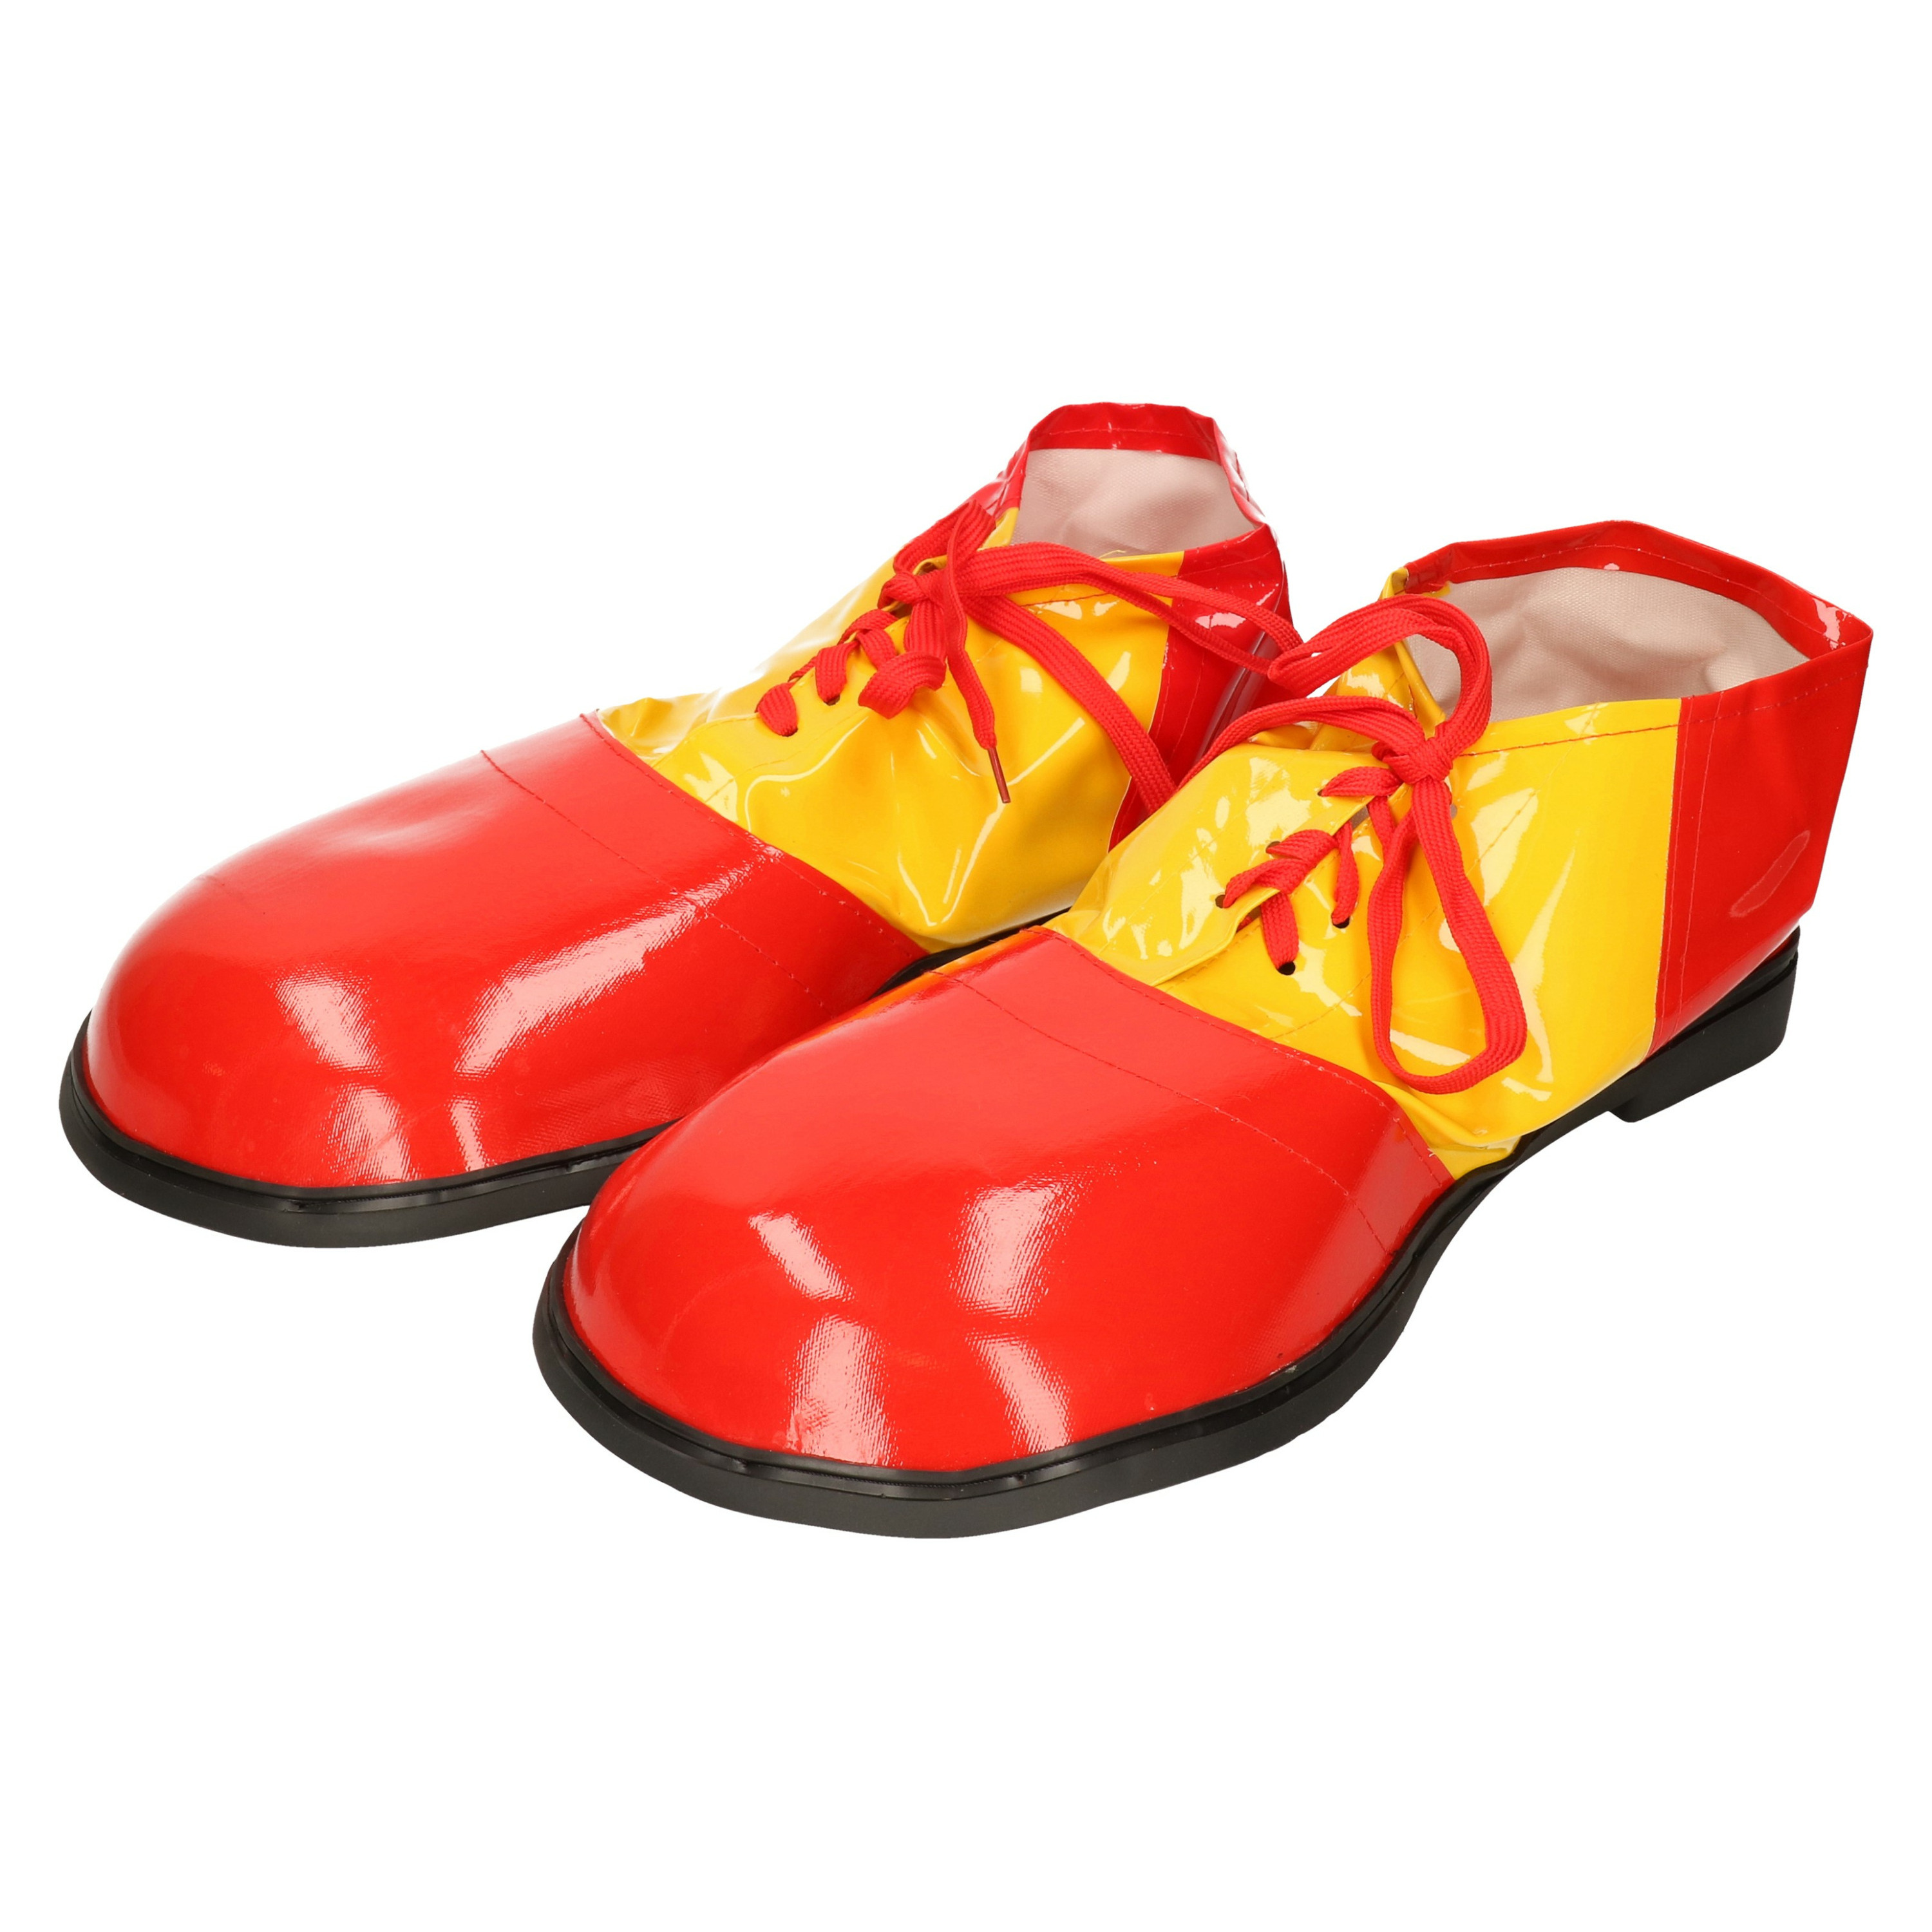 Grote fun verkleed Clown schoenen geel met rood one size